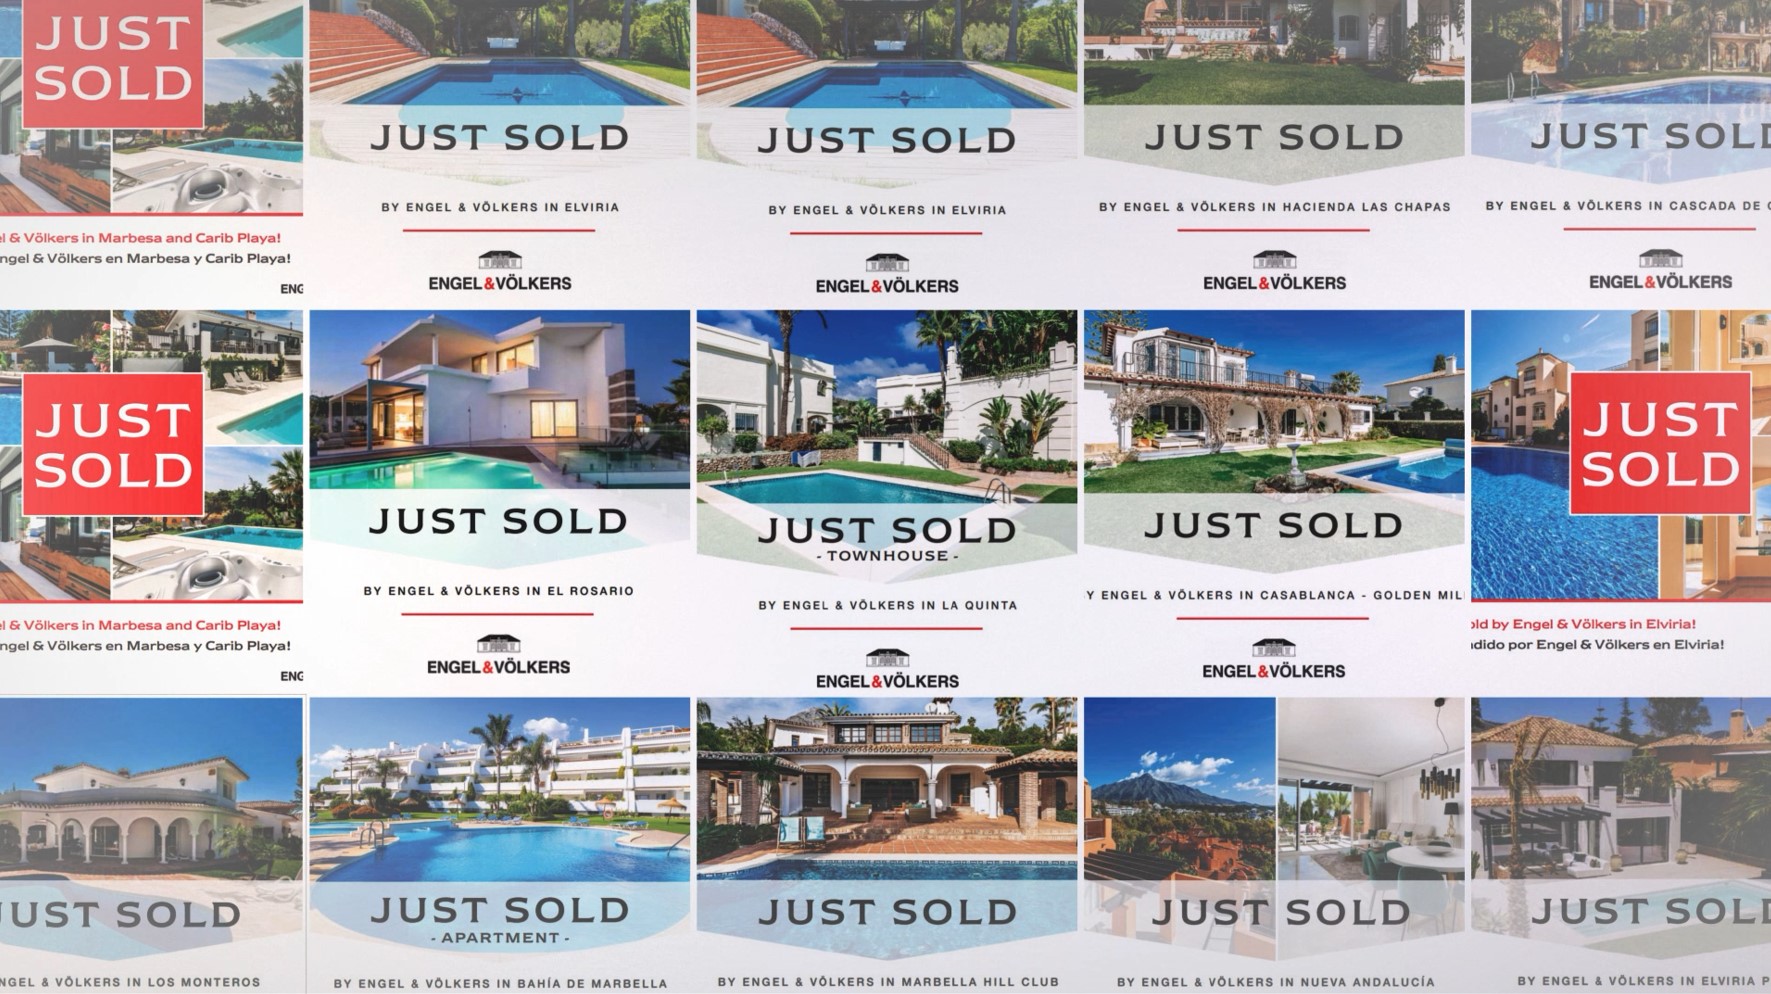 En 240 días hemos vendido más de 240 propiedades